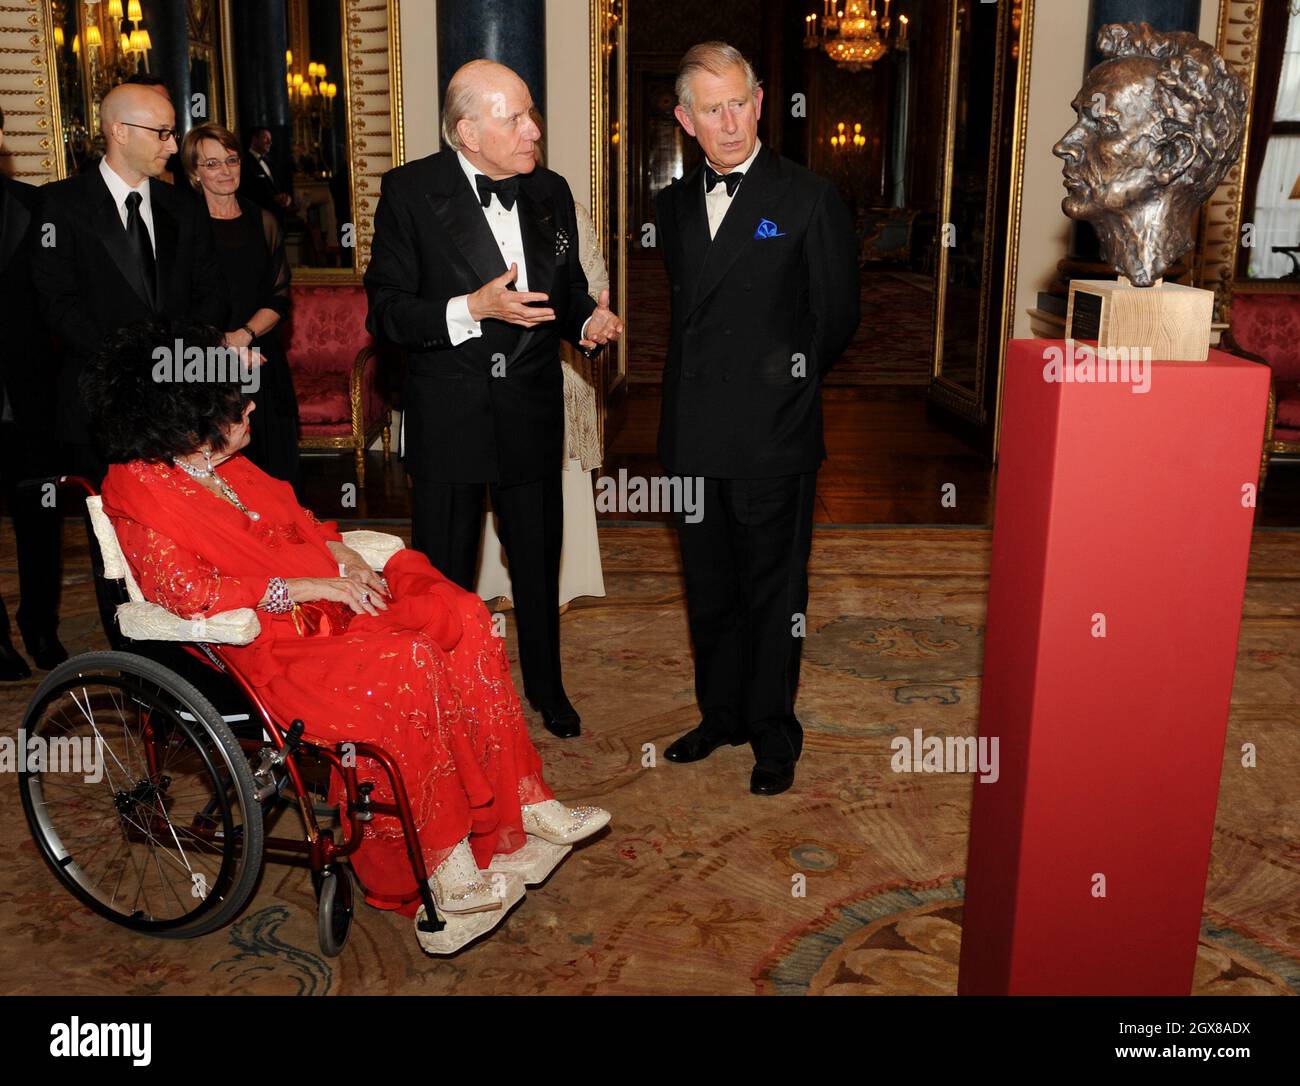 Prinz Charles, Prinz von Wales und die Schauspielerin Dame Elizabeth Taylor sitzen im Rollstuhl und betrachten eine Büste des walisischen Schauspielers Richard Burton während eines Galaabends des Royal Welsh College im Buckingham Palace in London am 29. April 2010. Stockfoto